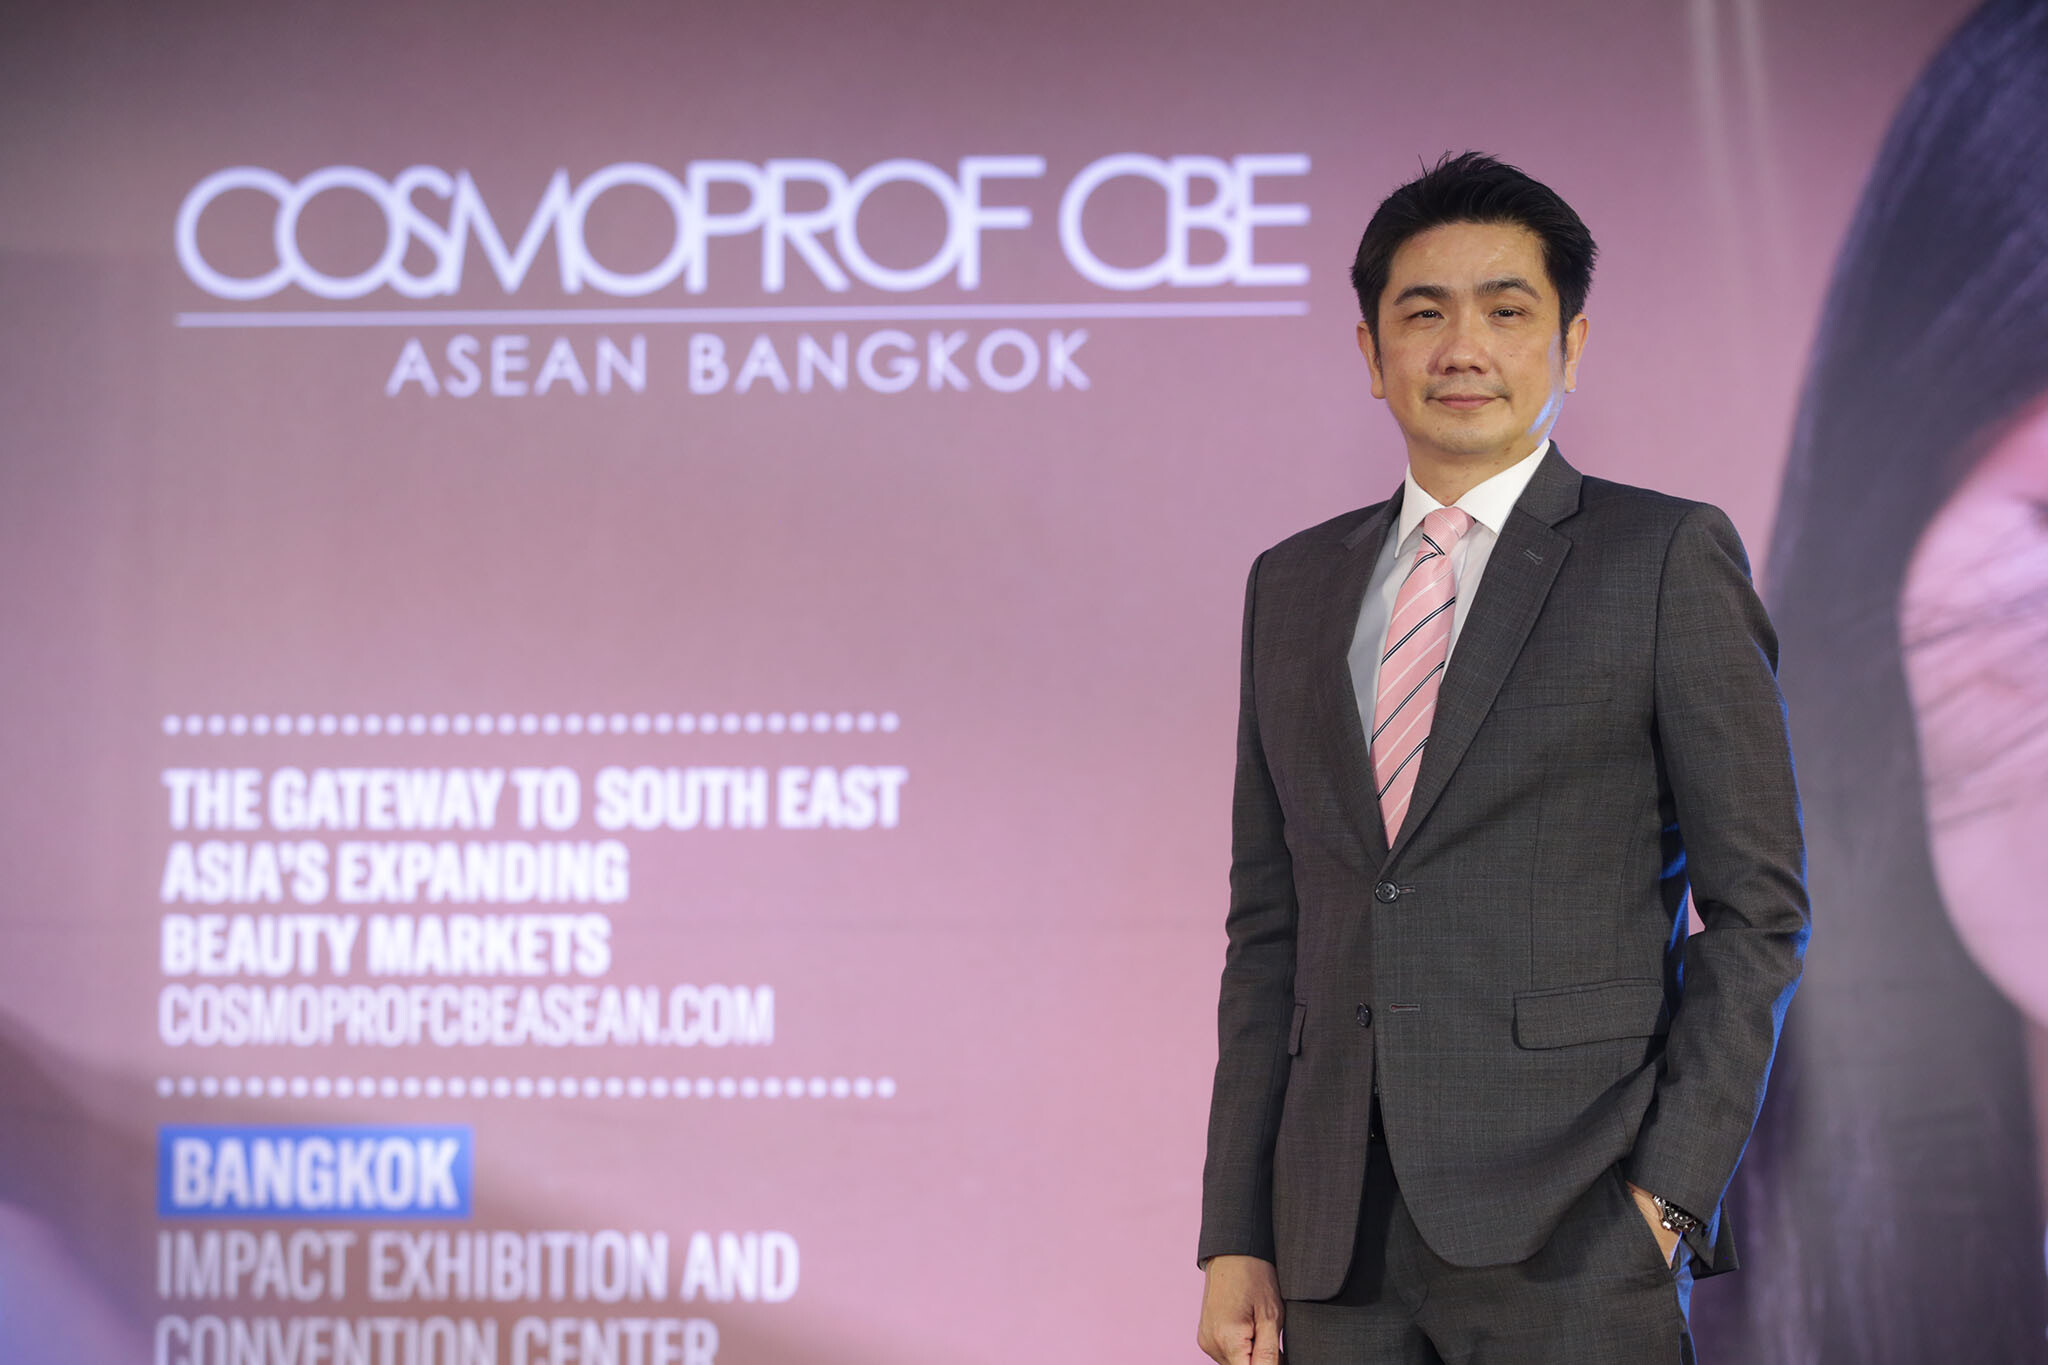 "อินฟอร์มา มาร์เก็ต" ประกาศ 15 ประเทศ ตบเท้าร่วมงาน "Cosmoprof CBE ASEAN 2022" งานแสดงสินค้าเพื่อธุรกิจความงามระดับโลก ณ อิมแพ็ค เมืองทองธานี ในวันที่ 15-17 กันยายน นี้